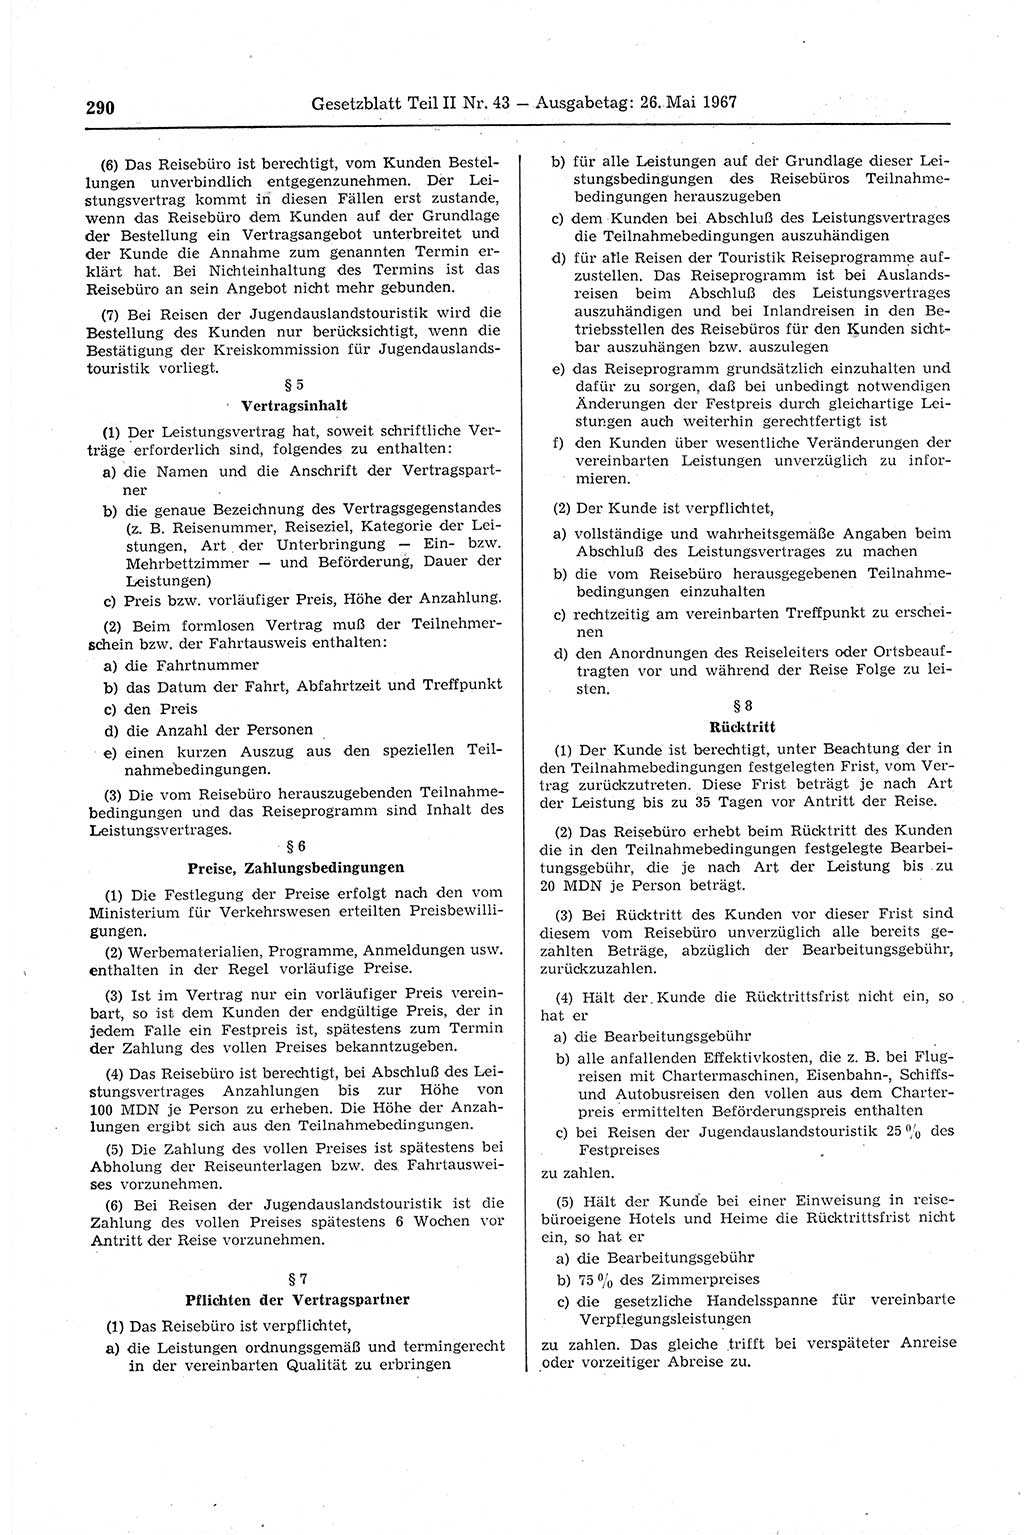 Gesetzblatt (GBl.) der Deutschen Demokratischen Republik (DDR) Teil ⅠⅠ 1967, Seite 290 (GBl. DDR ⅠⅠ 1967, S. 290)